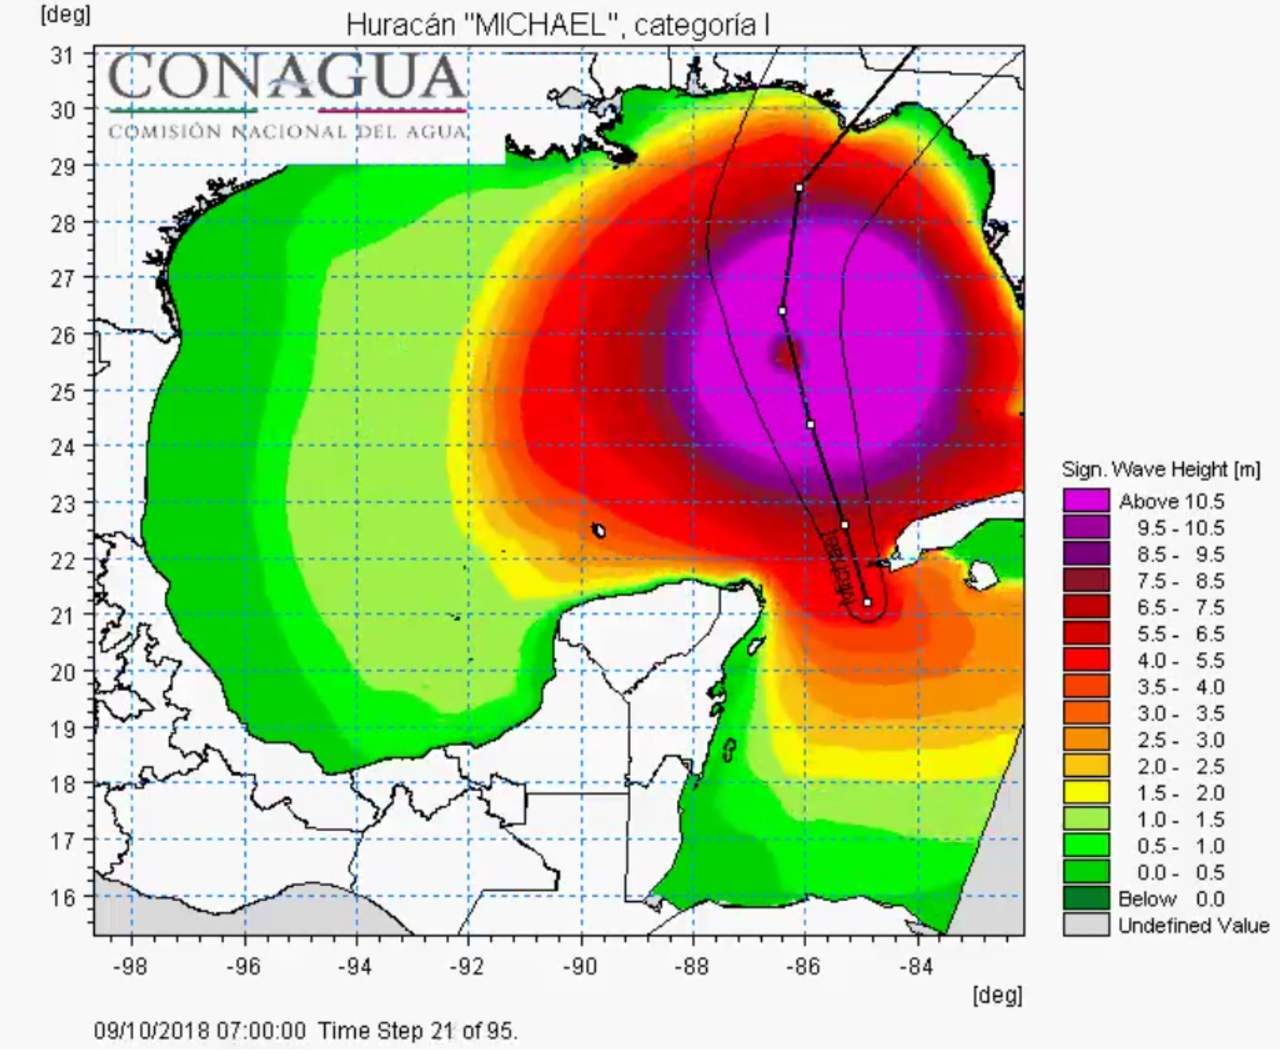 Michael se convirtió hoy en un huracán categoría 3 con vientos crecientes en las inmediaciones de Cuba y se enfila hacia Florida, donde podría tocar tierra el miércoles siguiente, reportó hoy el Centro Nacional de Huracanes (CNH). (TWITTER)